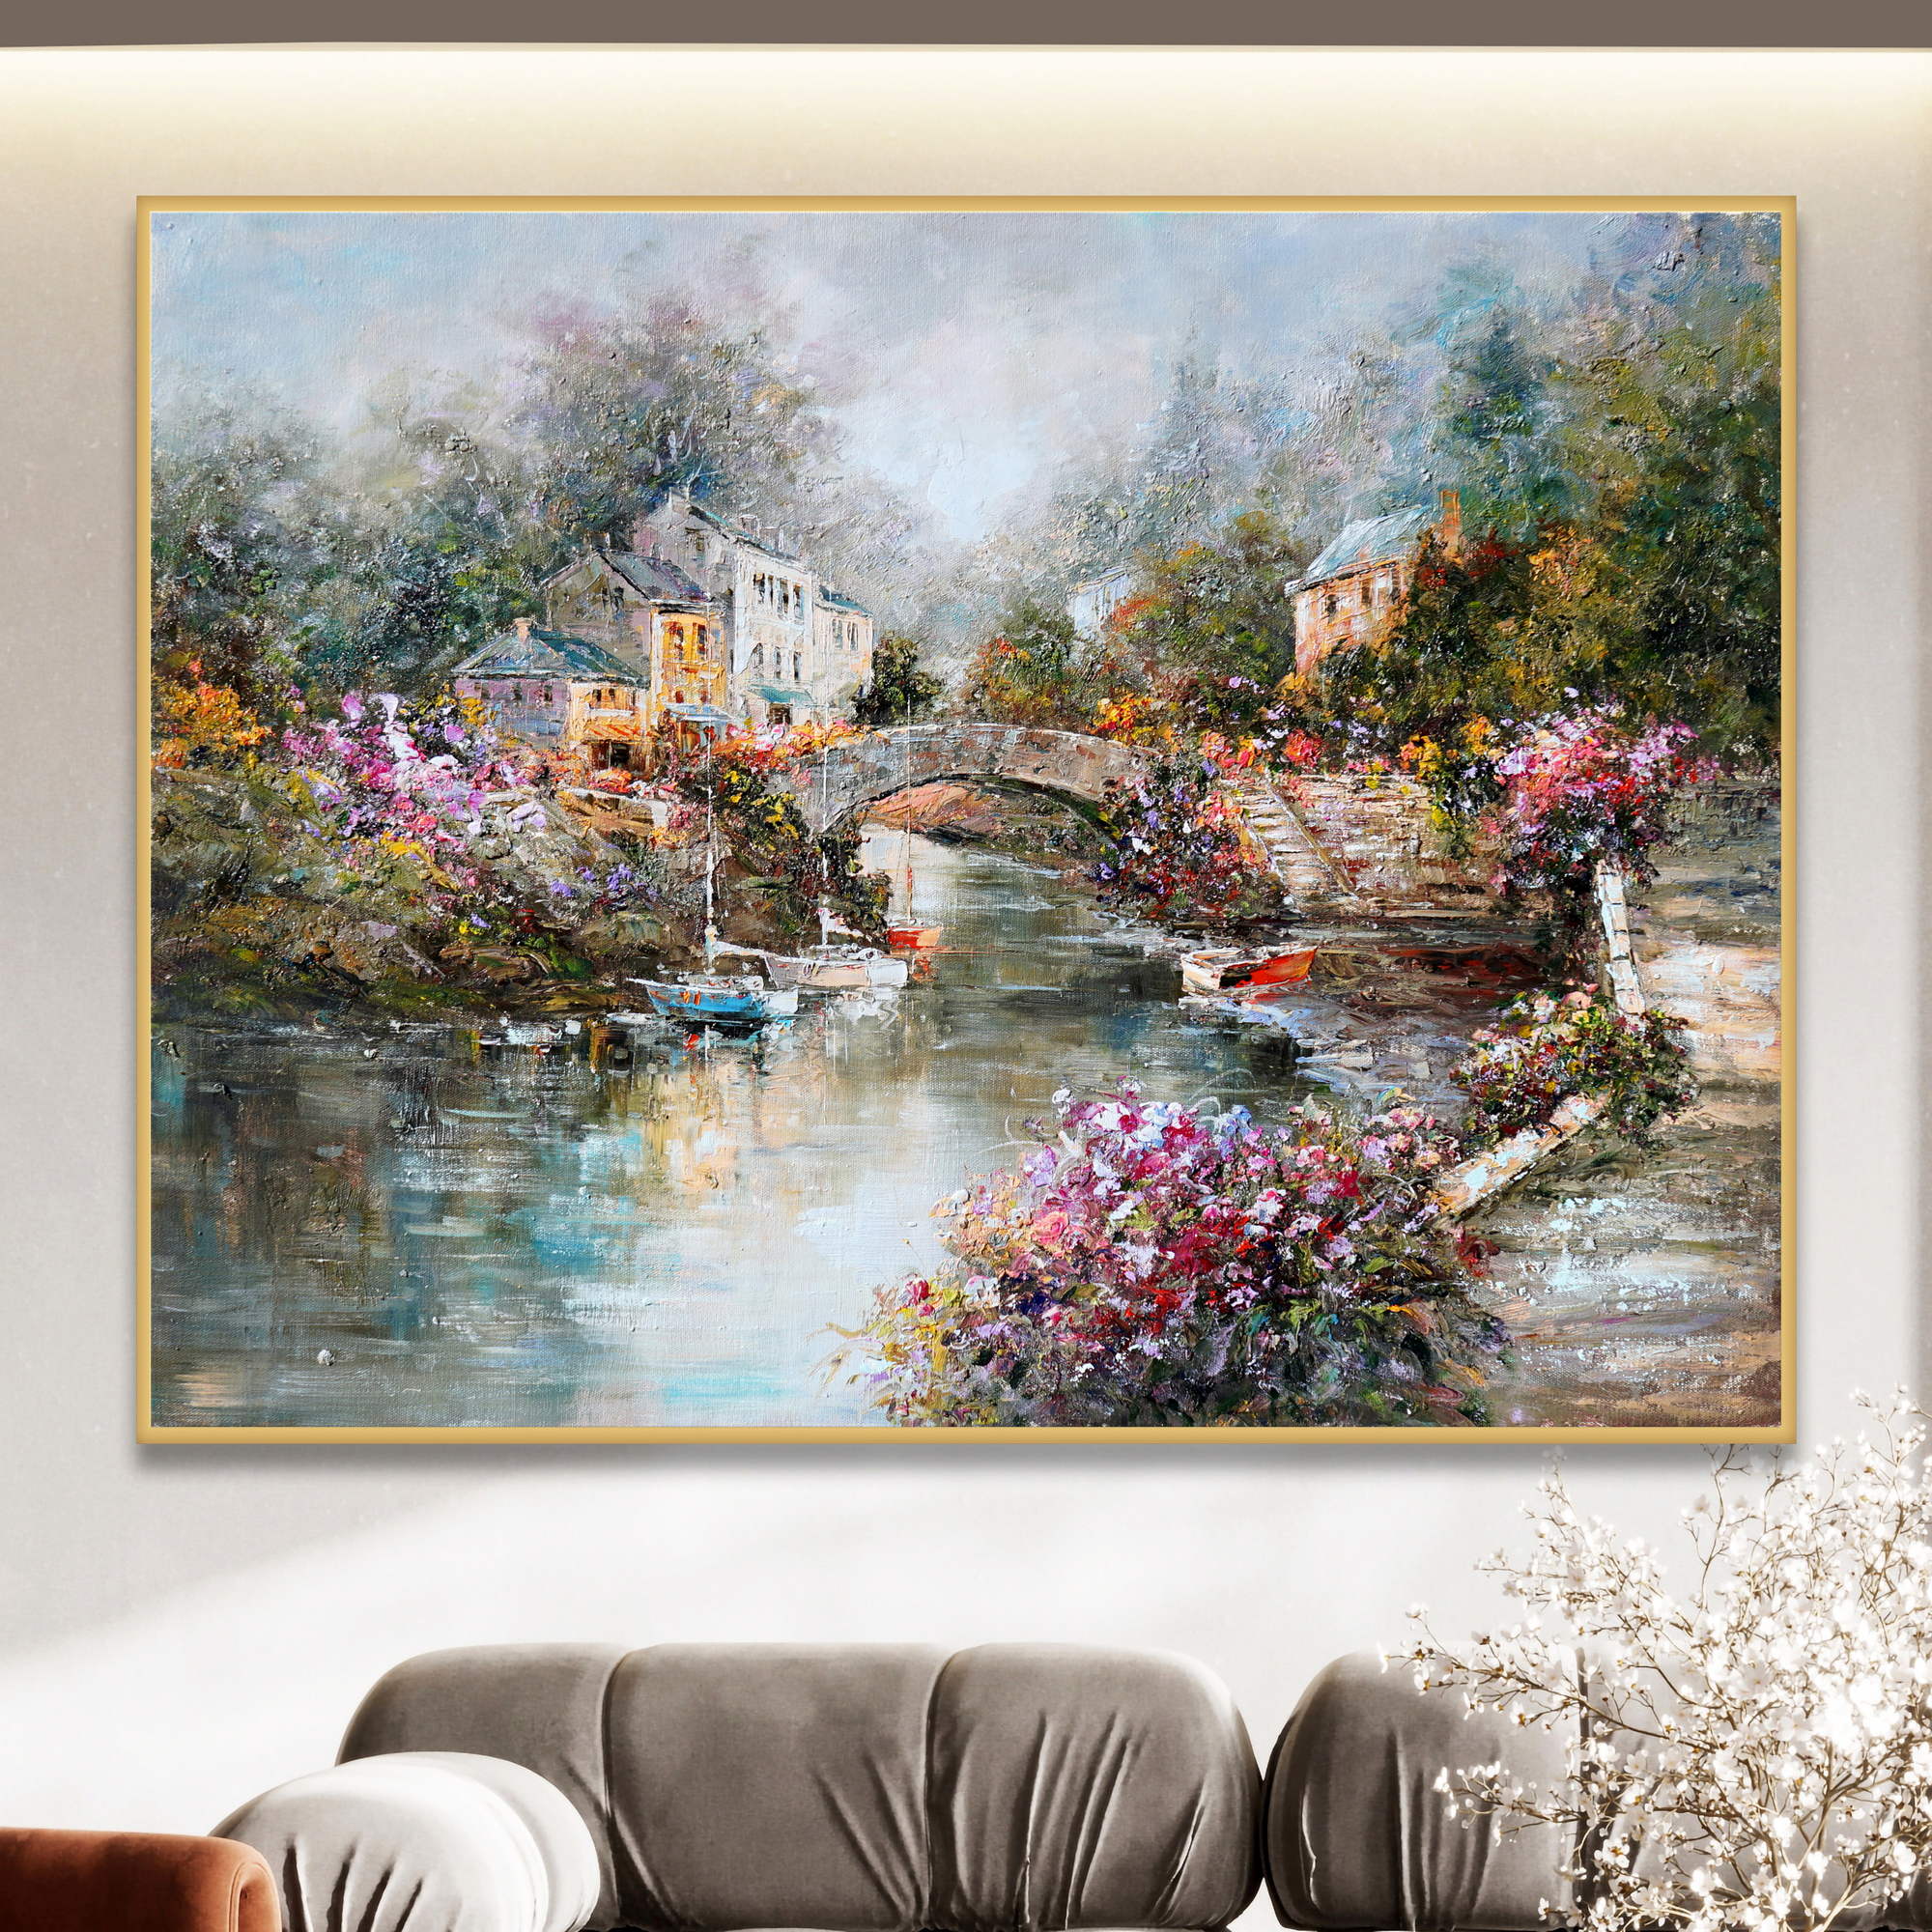 Dipinto di un biccolo borgo antico attraversato da un fiume e circondato da  fiori